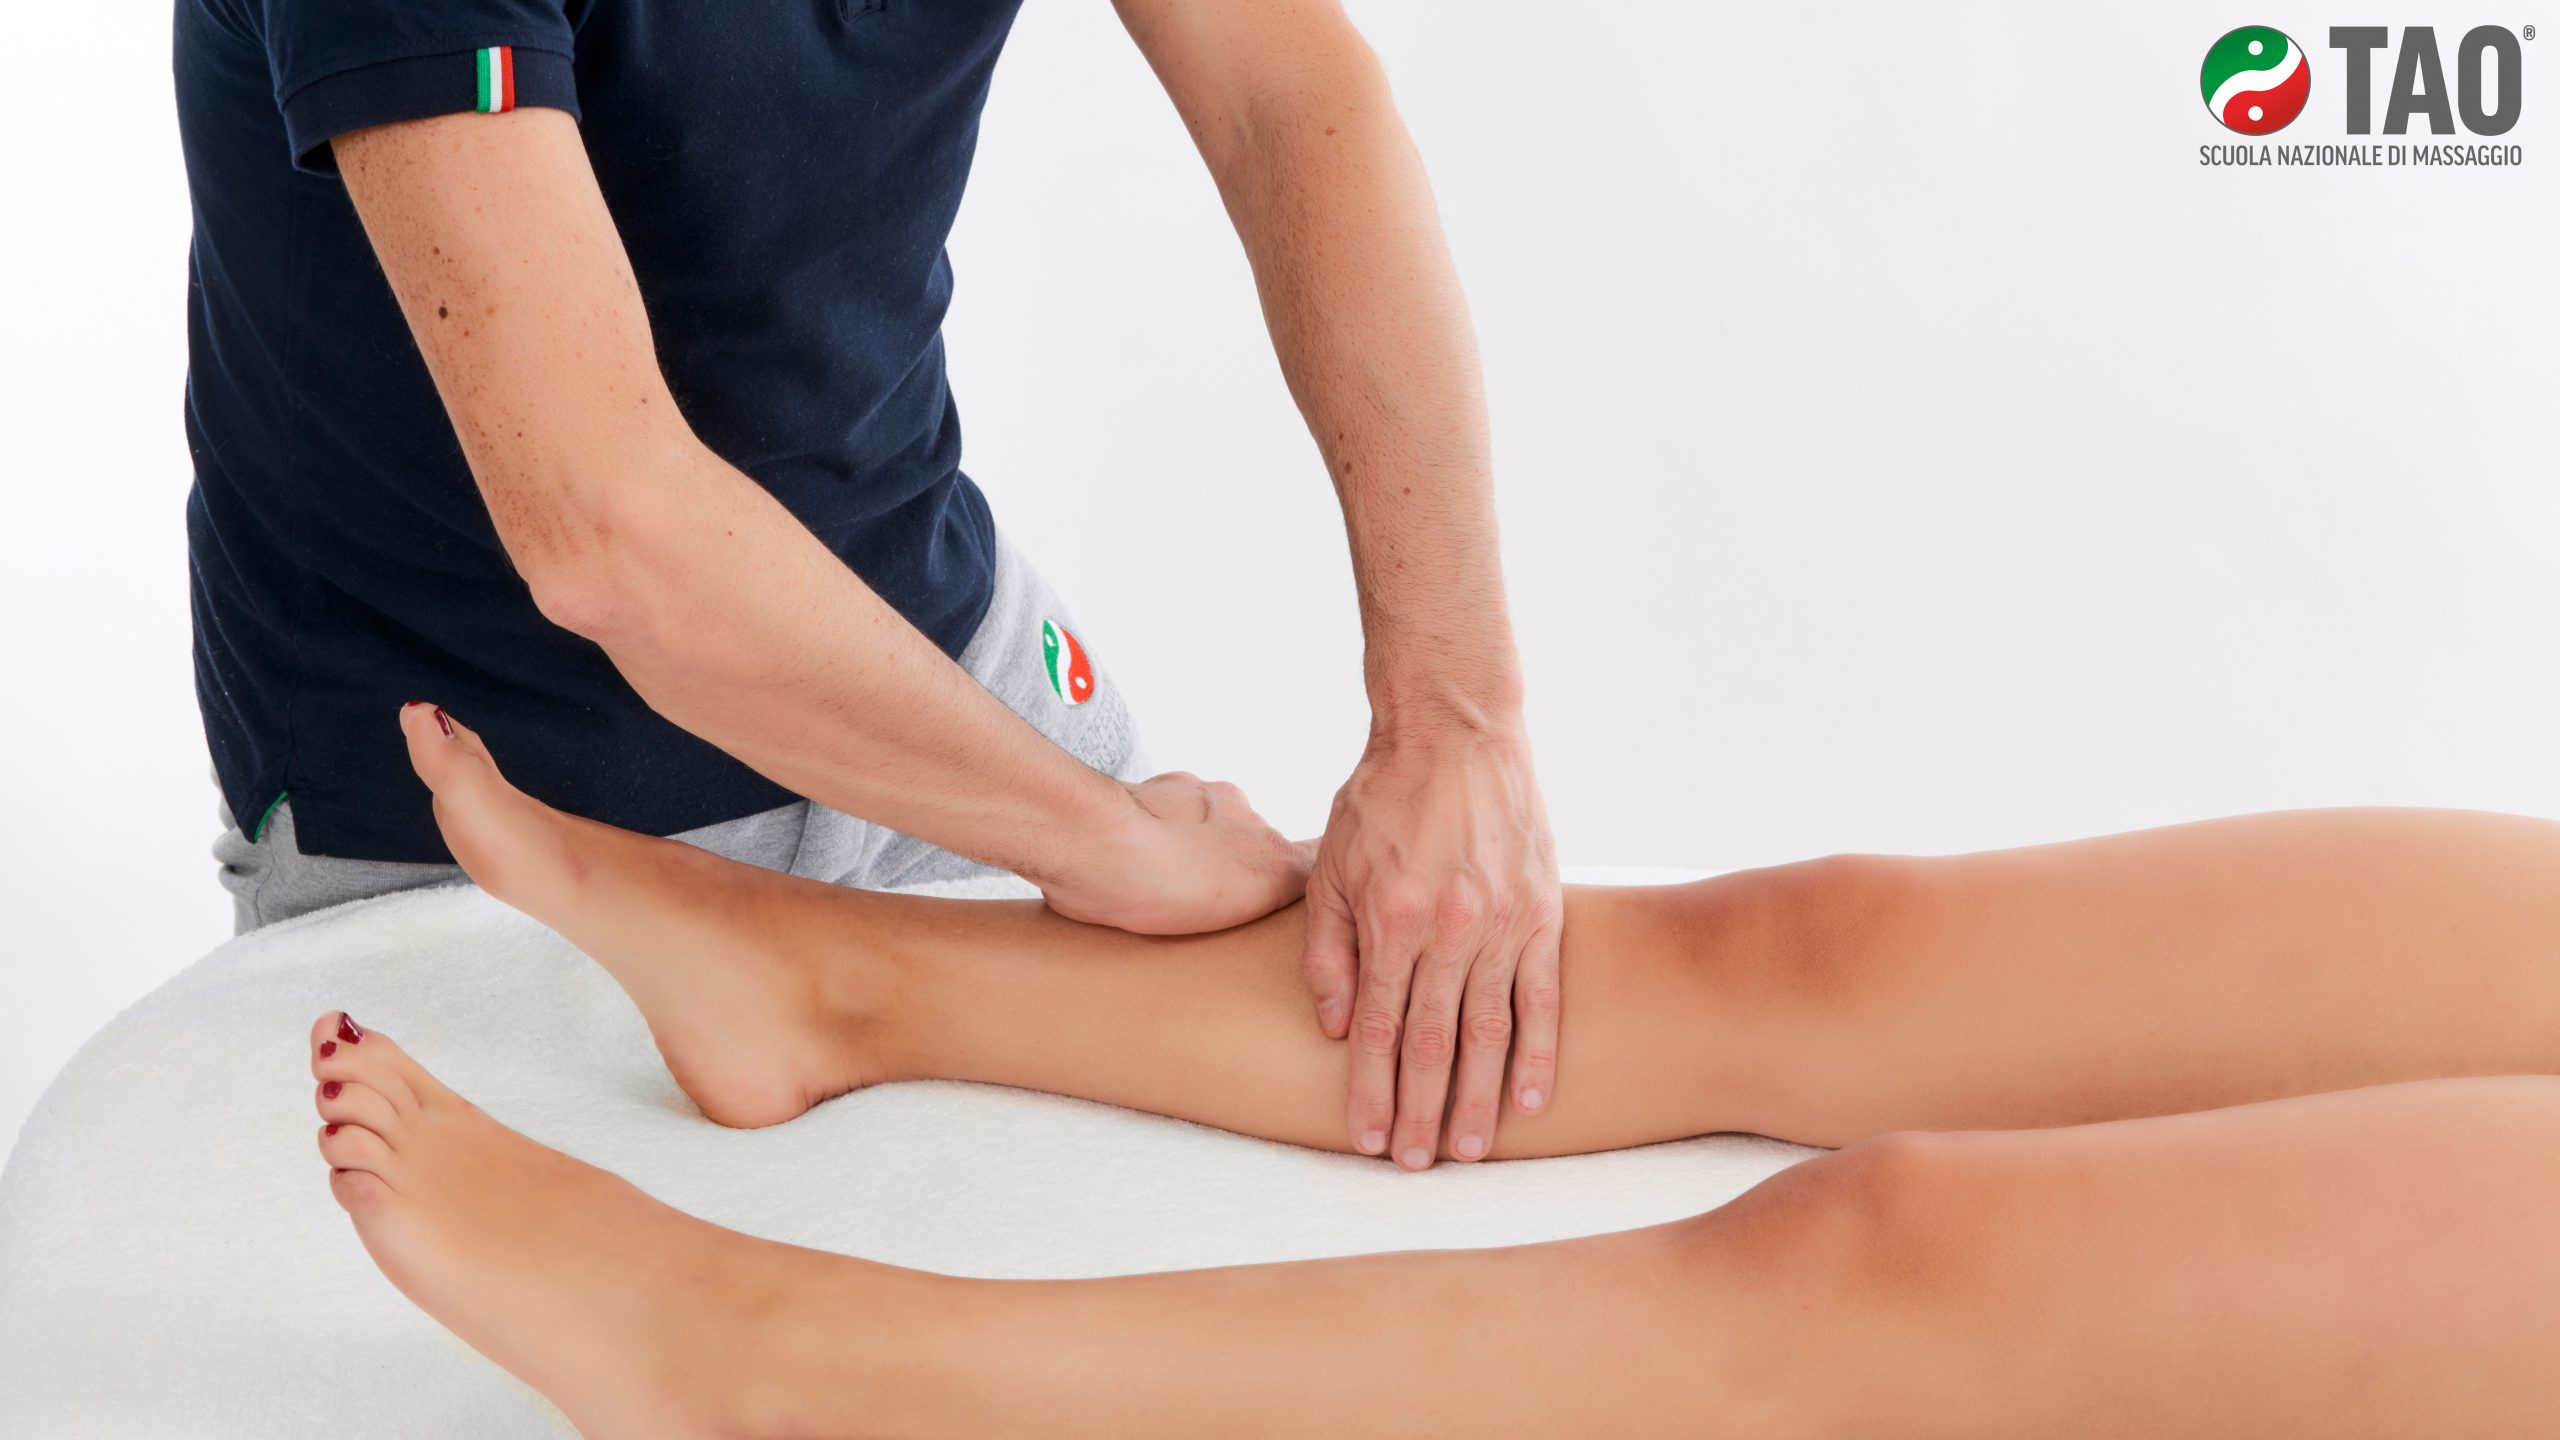 Diventare massaggiatore: il primo passo è la scelta del corso giusto